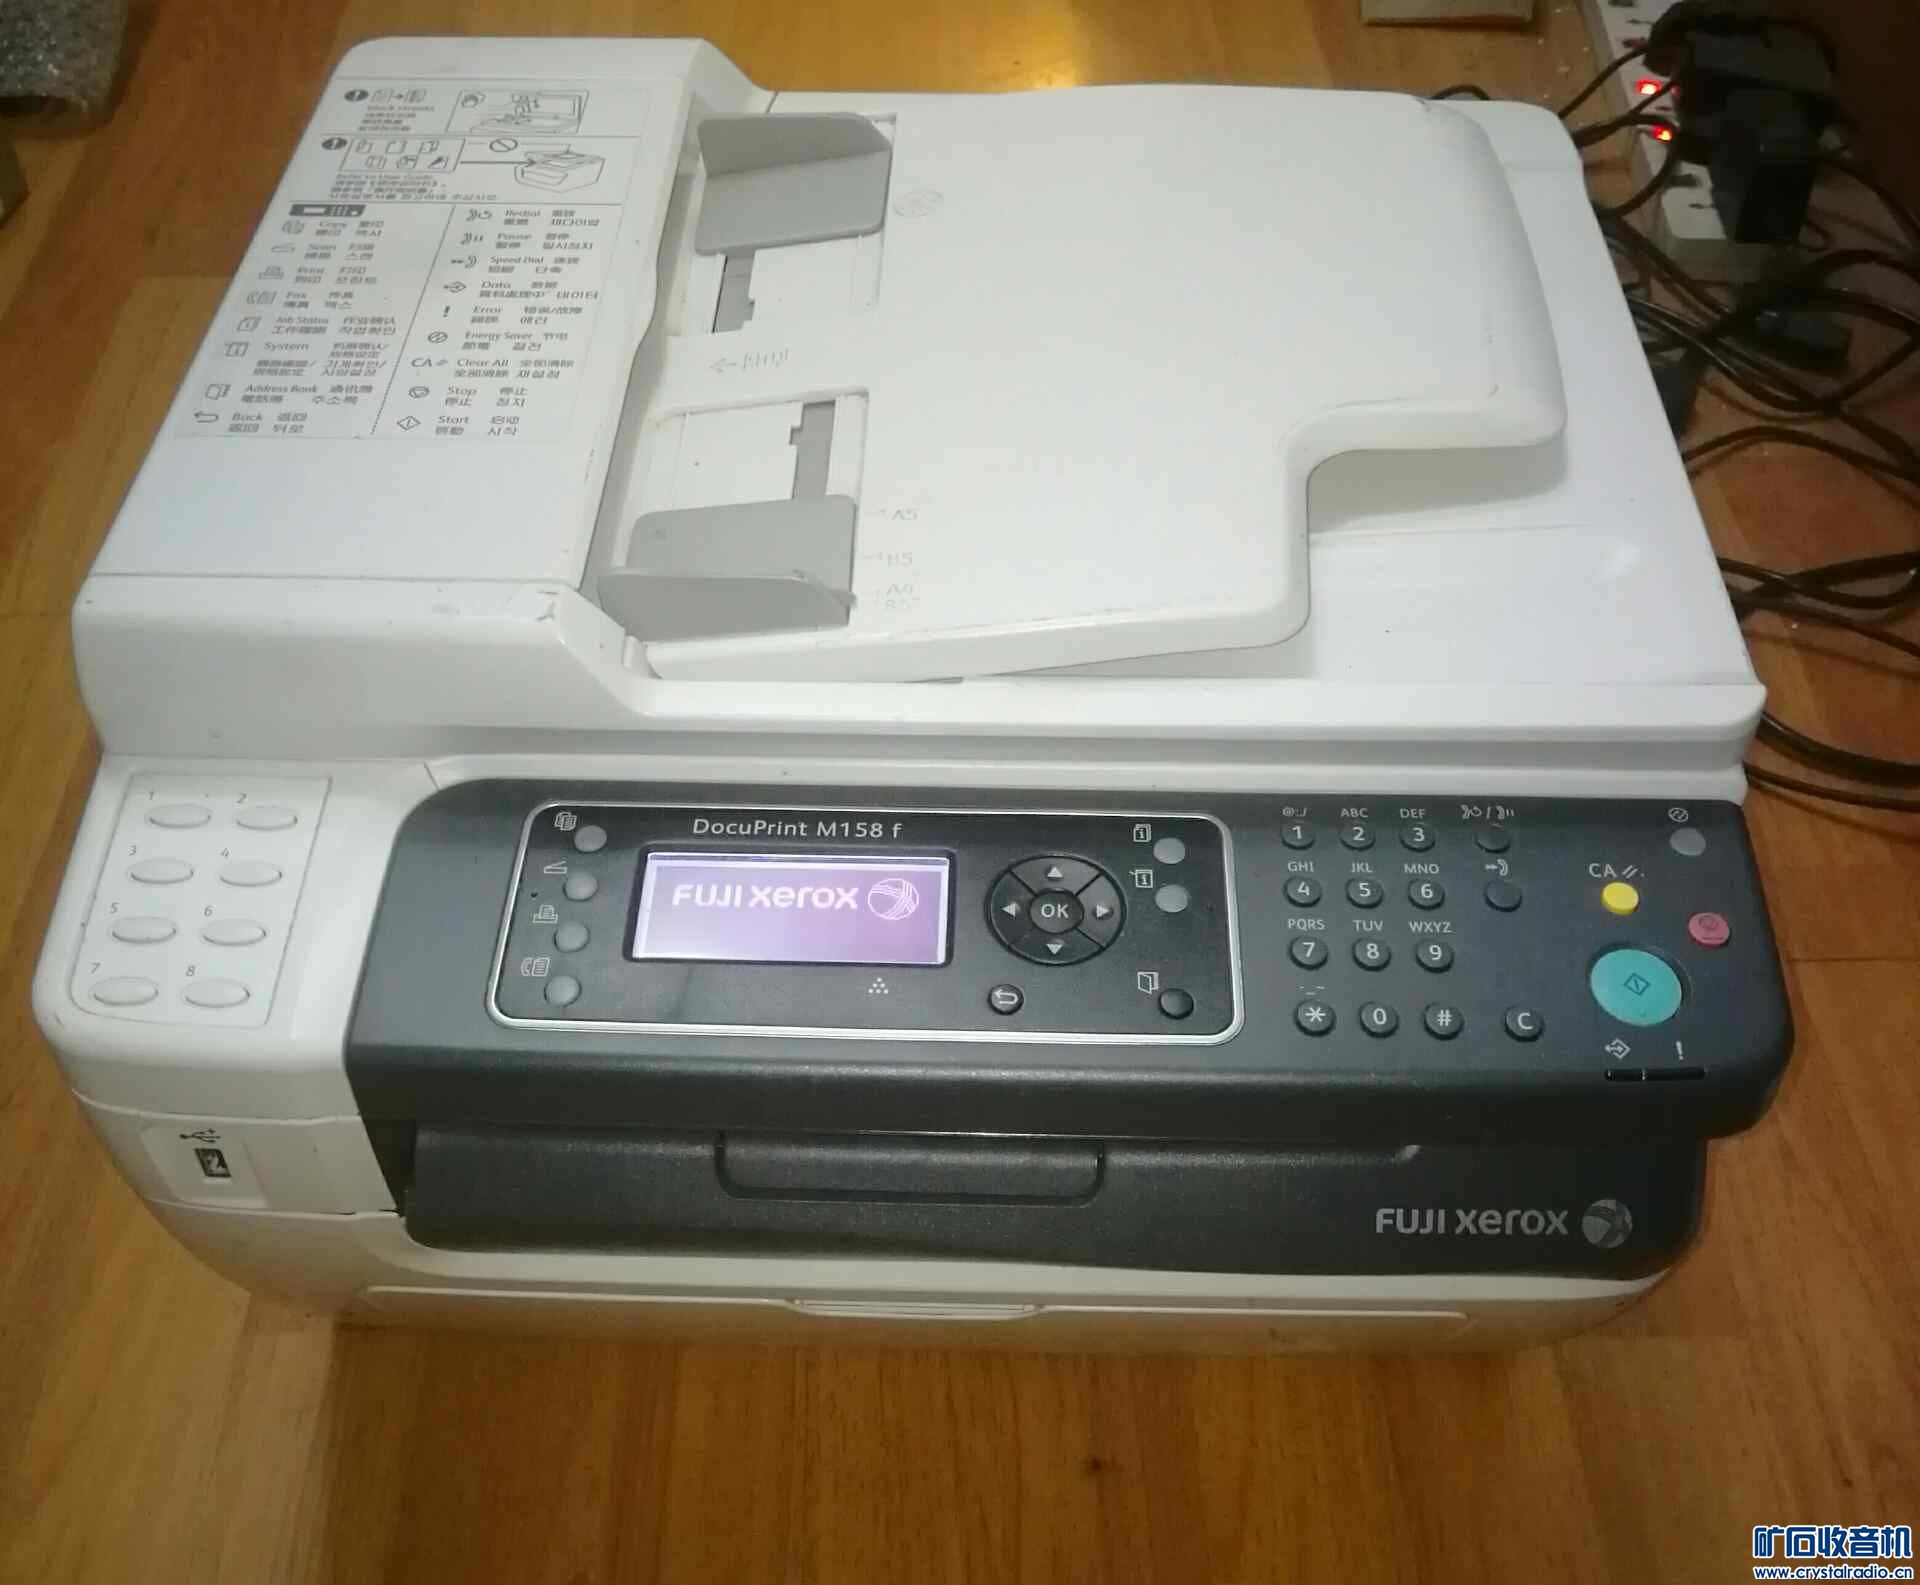 故障施乐m158f打印复印扫描传真一体机 - 〓器